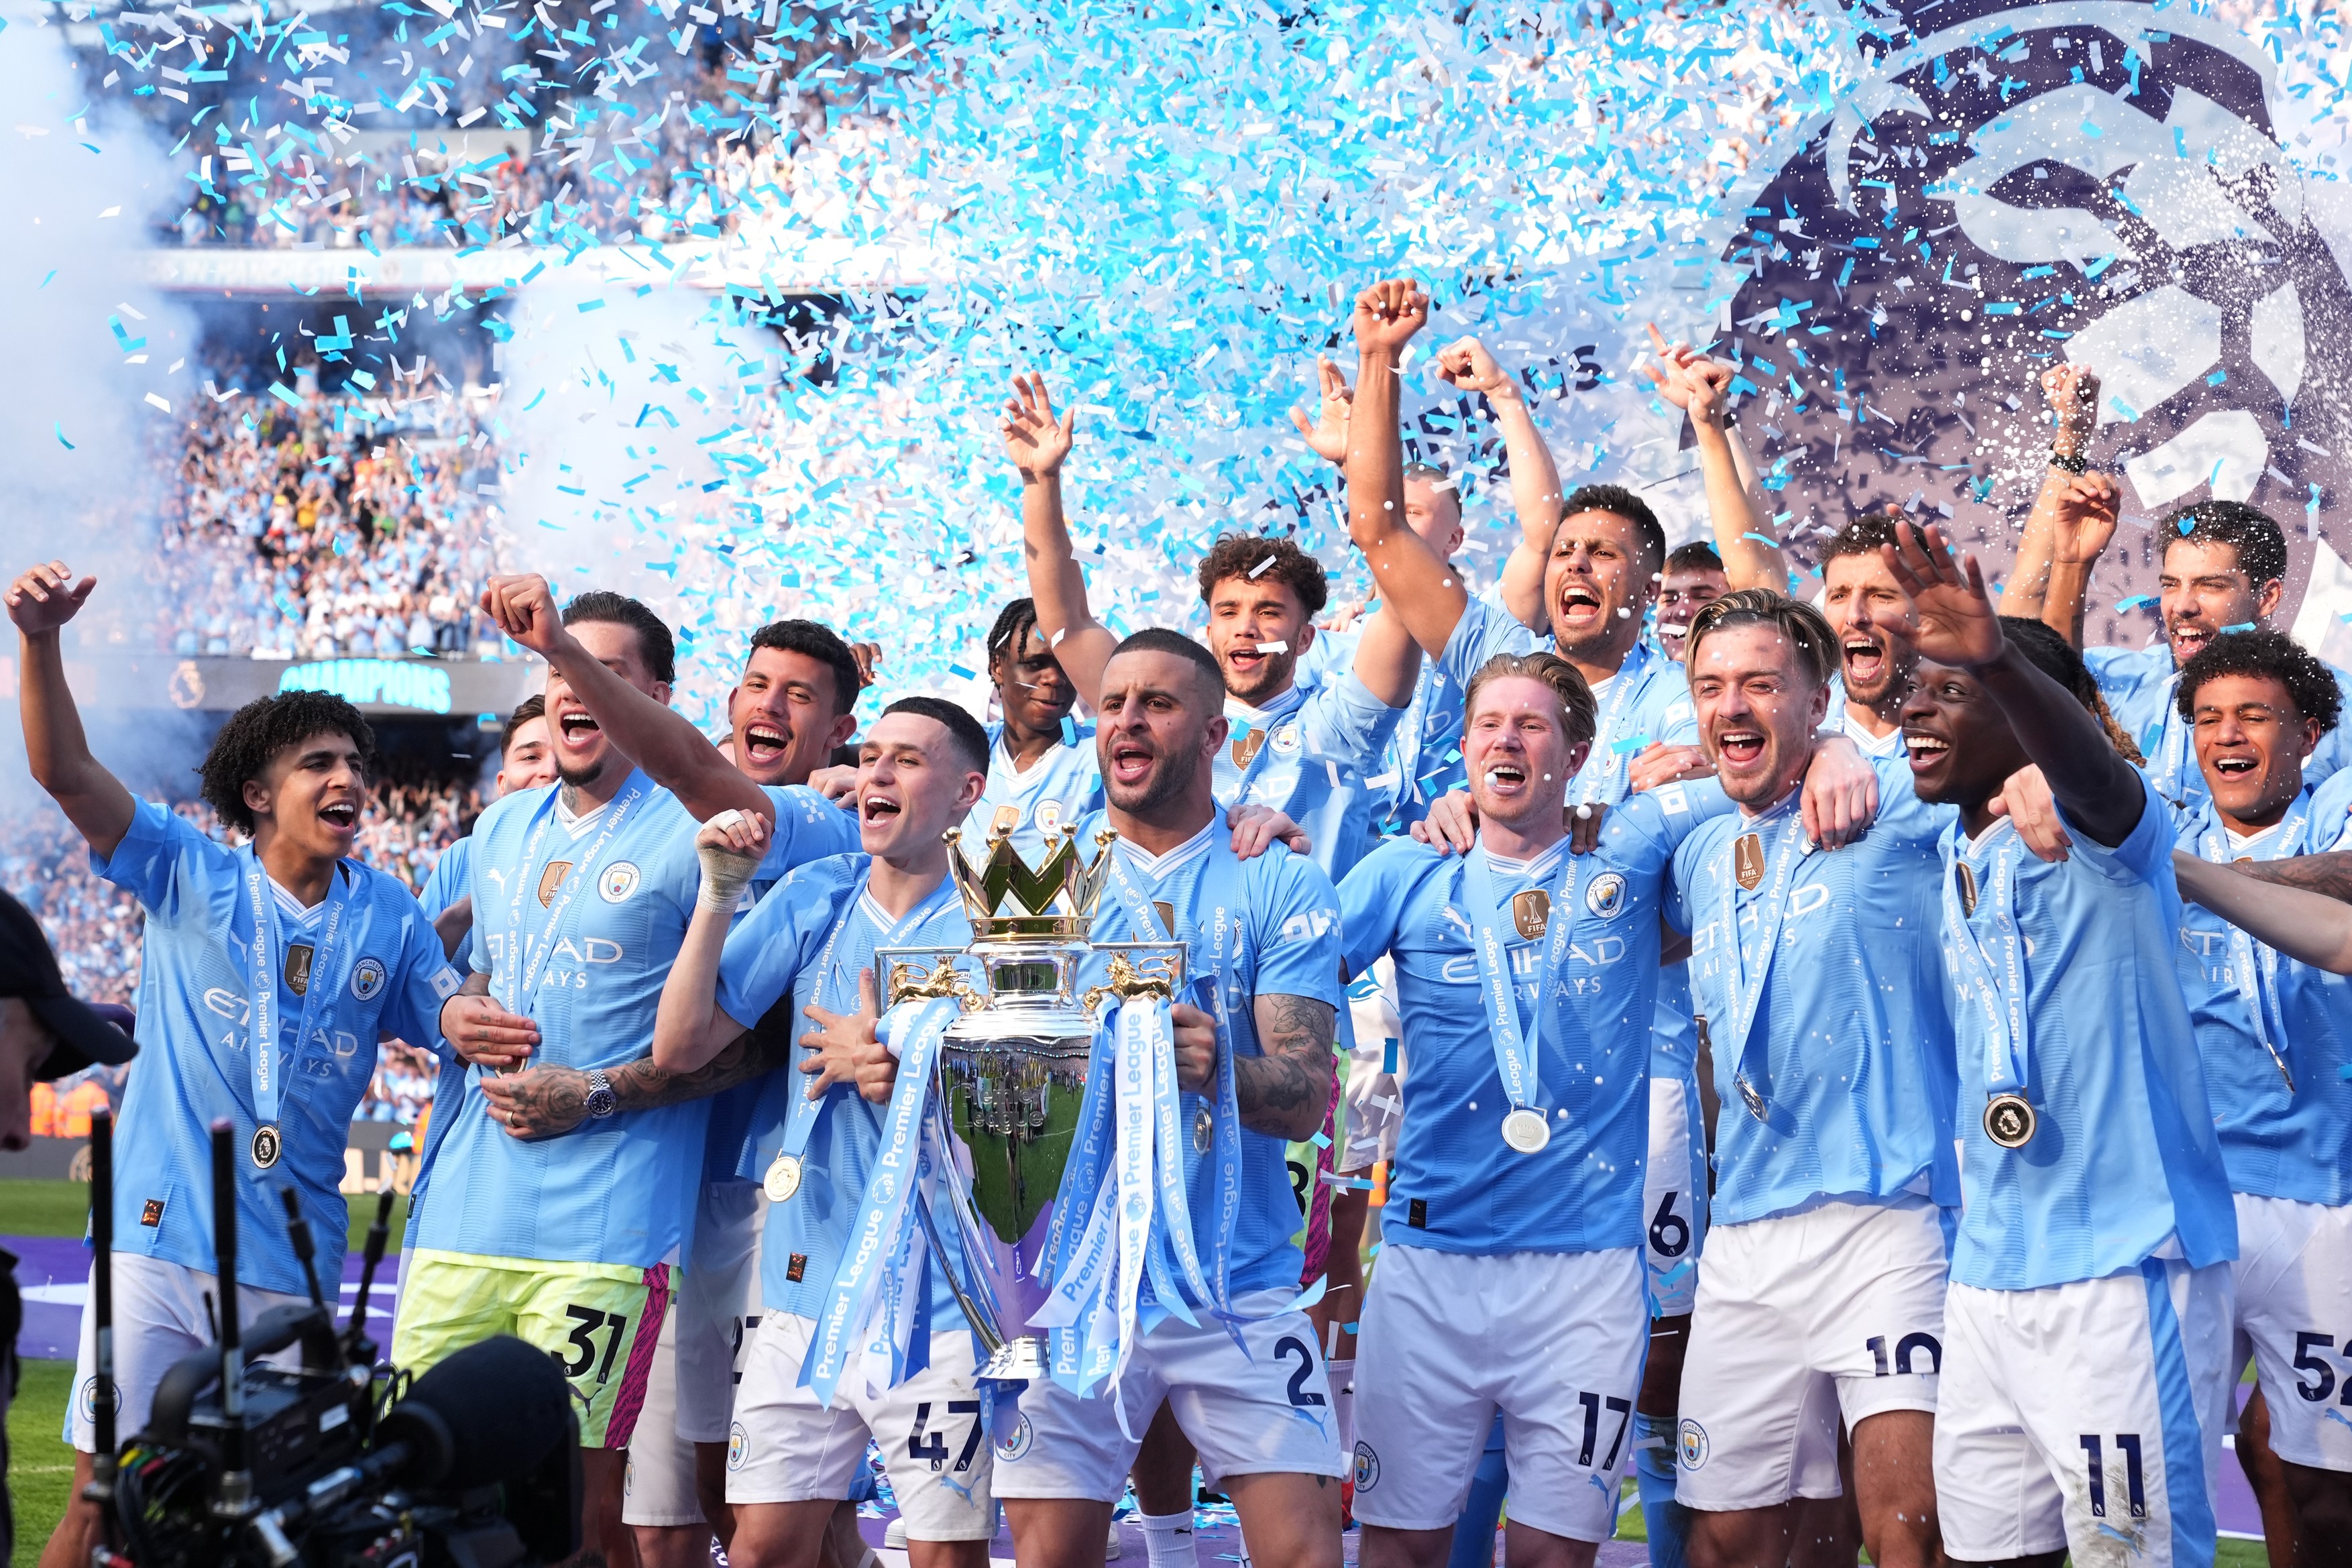 Imaginile bucuriei! Cum au sărbătorit fanii și jucătorii lui Manchester City titlul de campioană